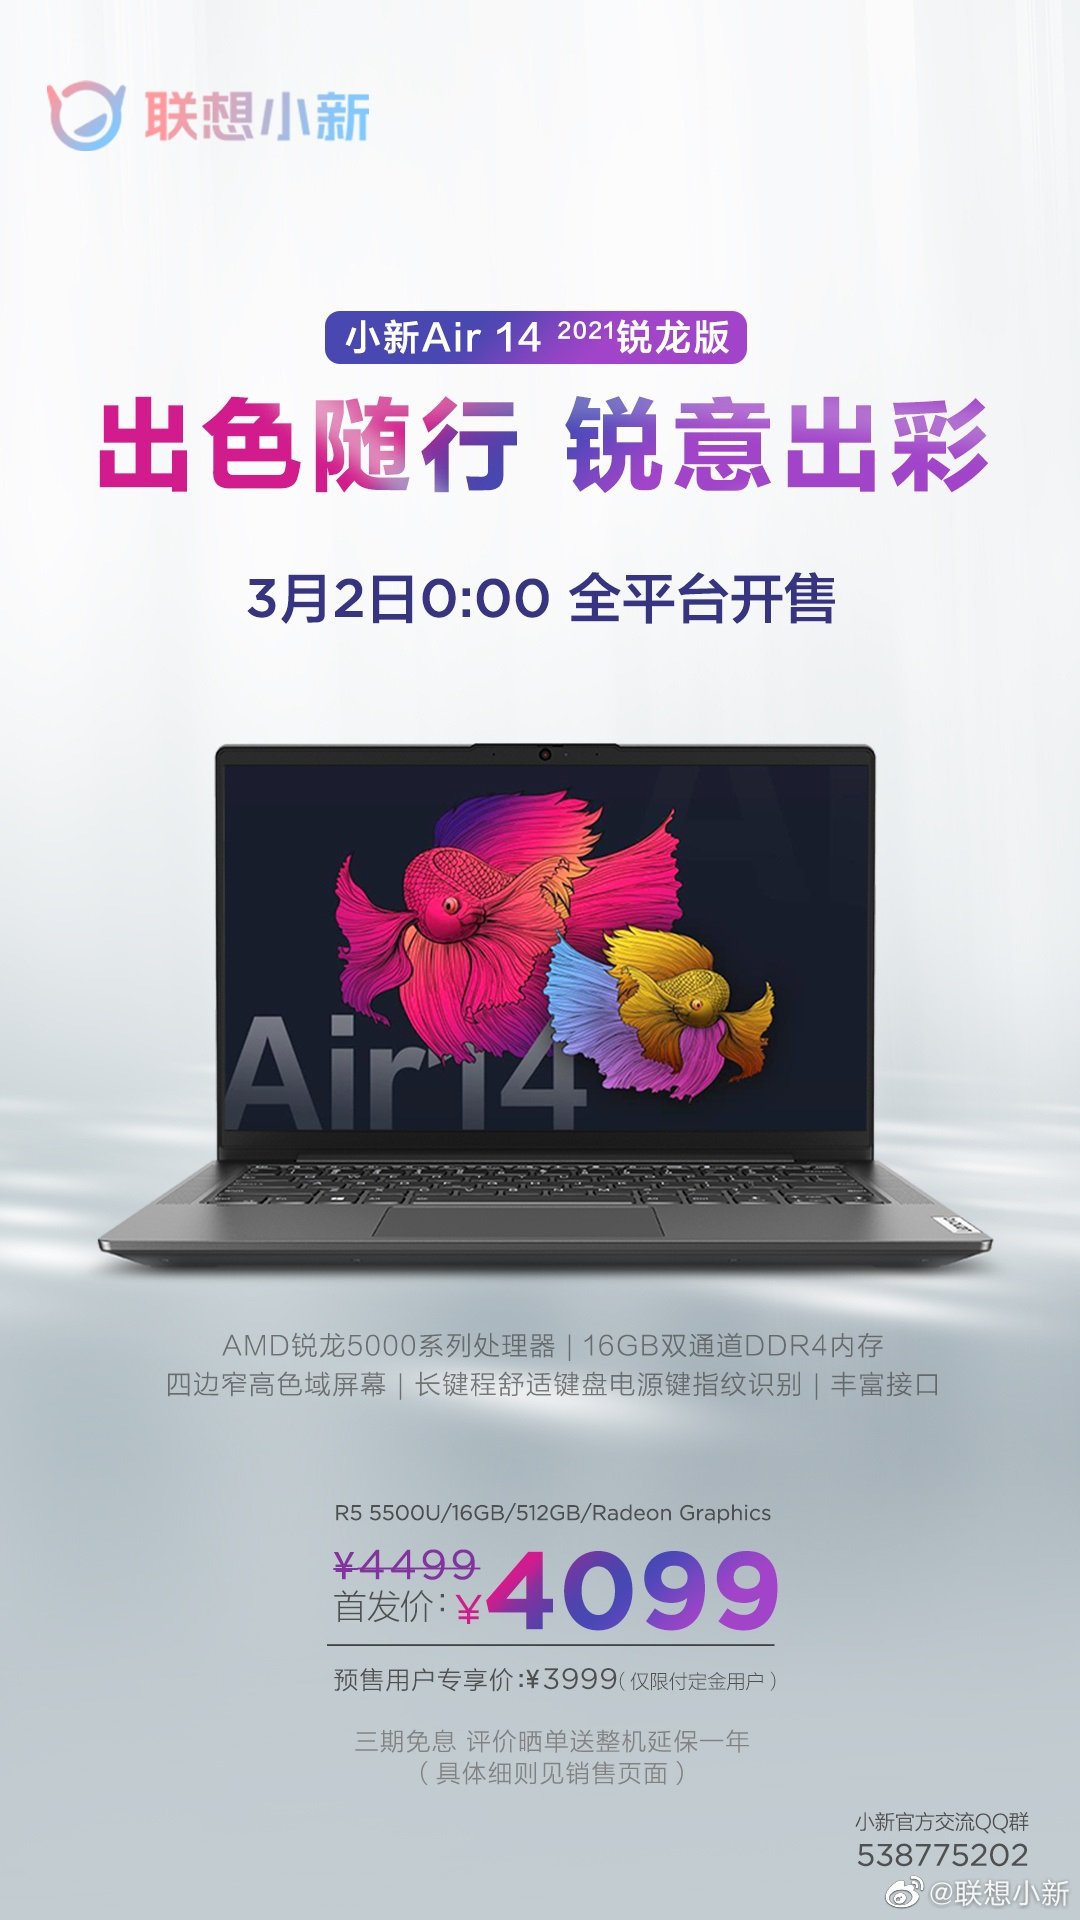 Lenovo Xiaoxin Air 14 2021 Ryzen Edition поступит в продажу в Китае